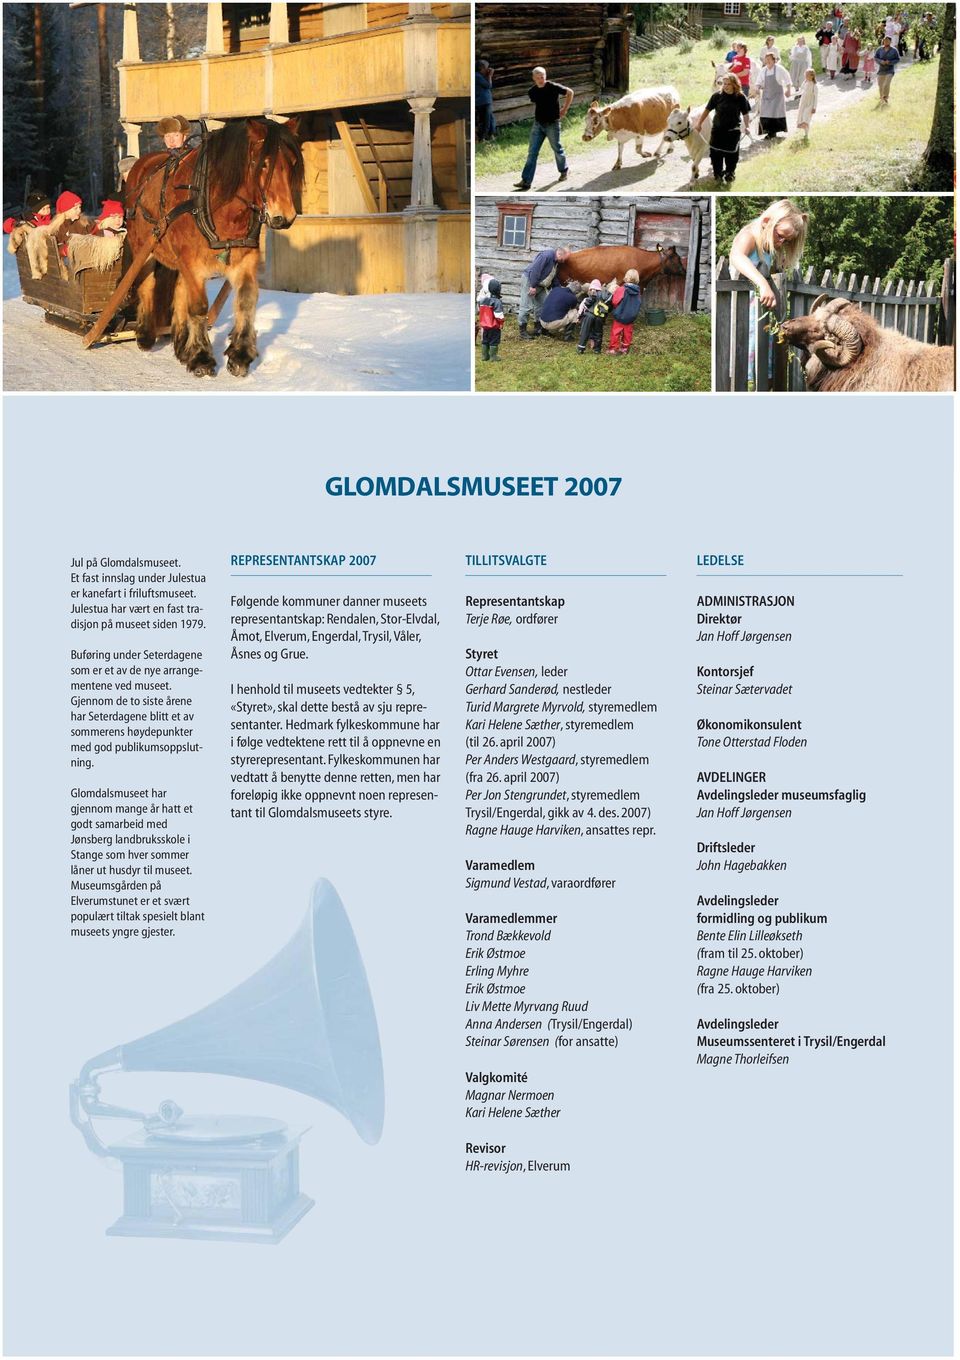 Glomdalsmuseet har gjennom mange år hatt et godt samarbeid med Jønsberg landbruksskole i Stange som hver sommer låner ut husdyr til museet.